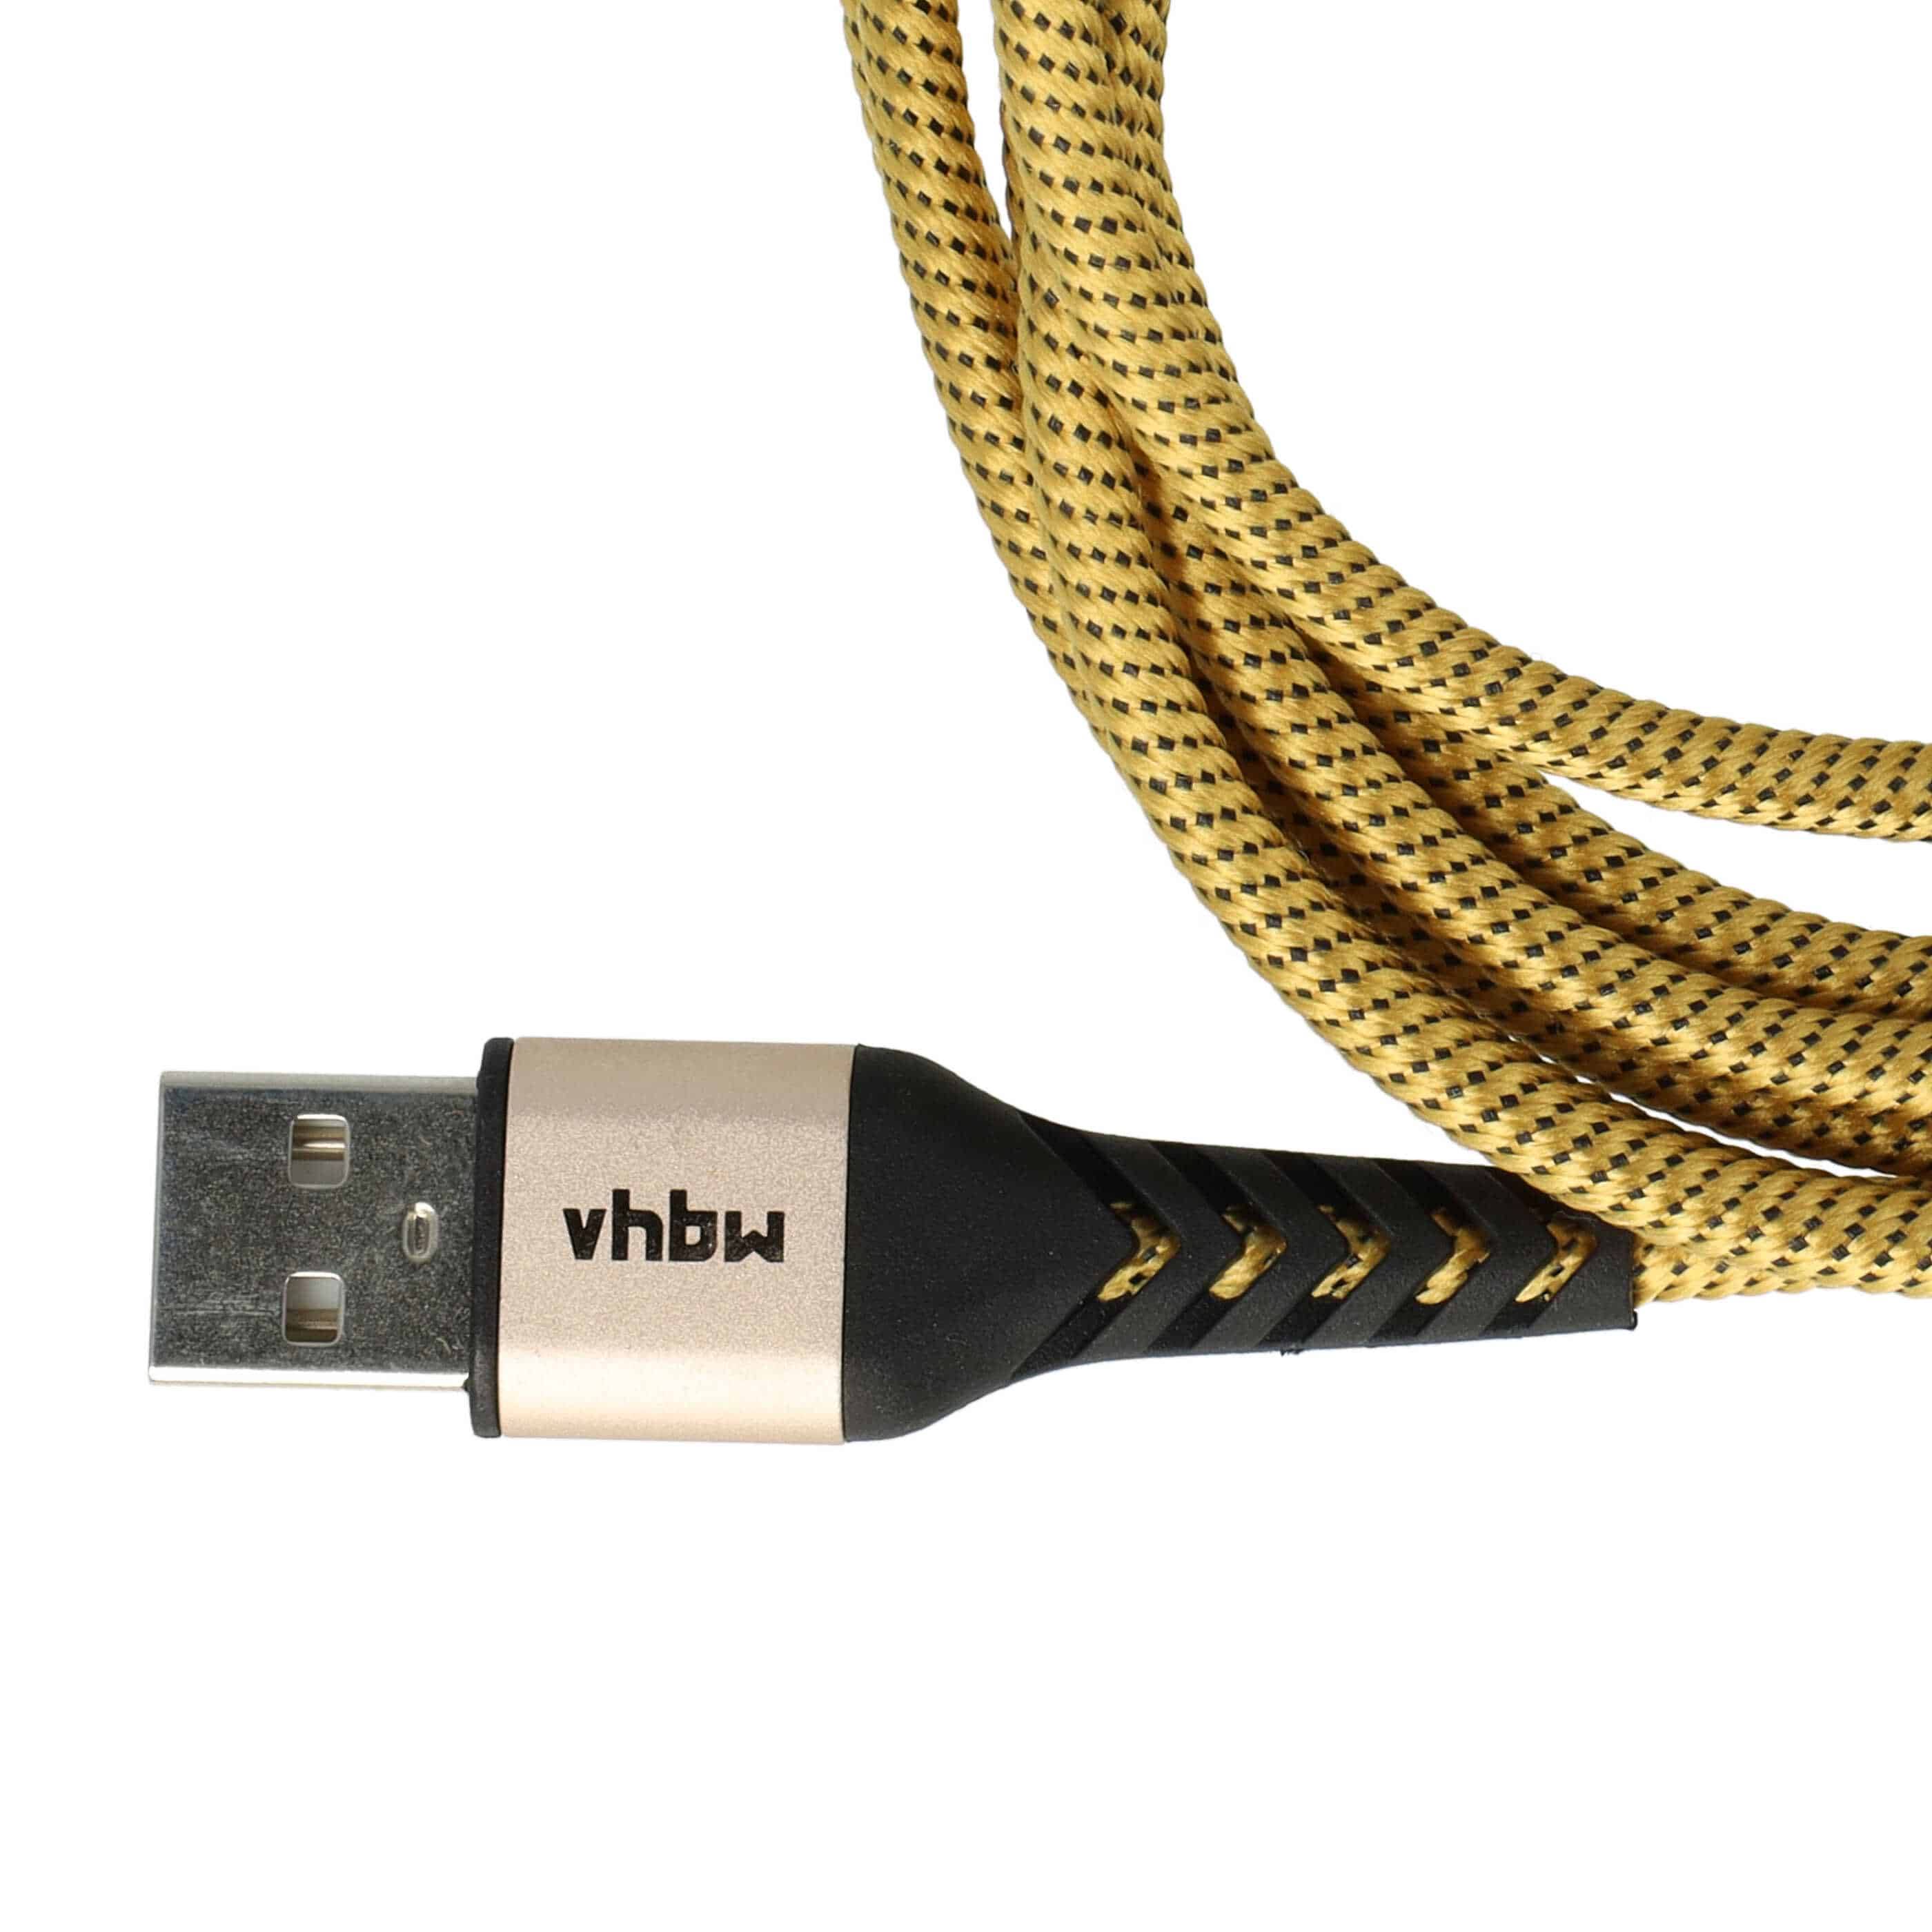 2x Cable lightning a USB A para dispositivos Apple iOS Apple AirPods - negro / amarillo, 180 cm